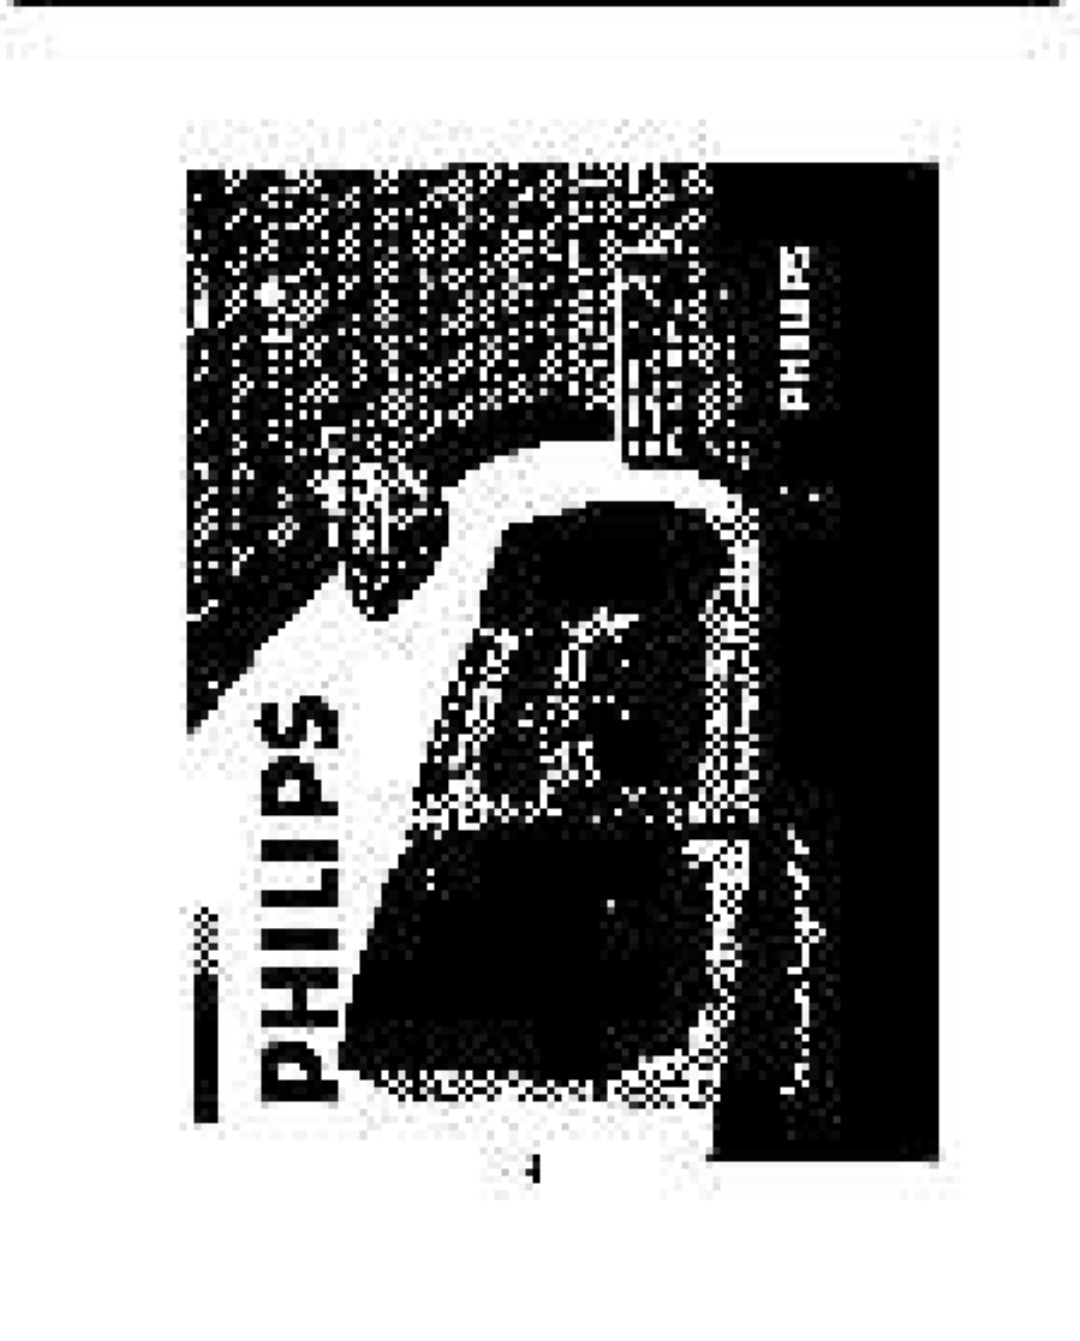 Philips FW-C100 manual 